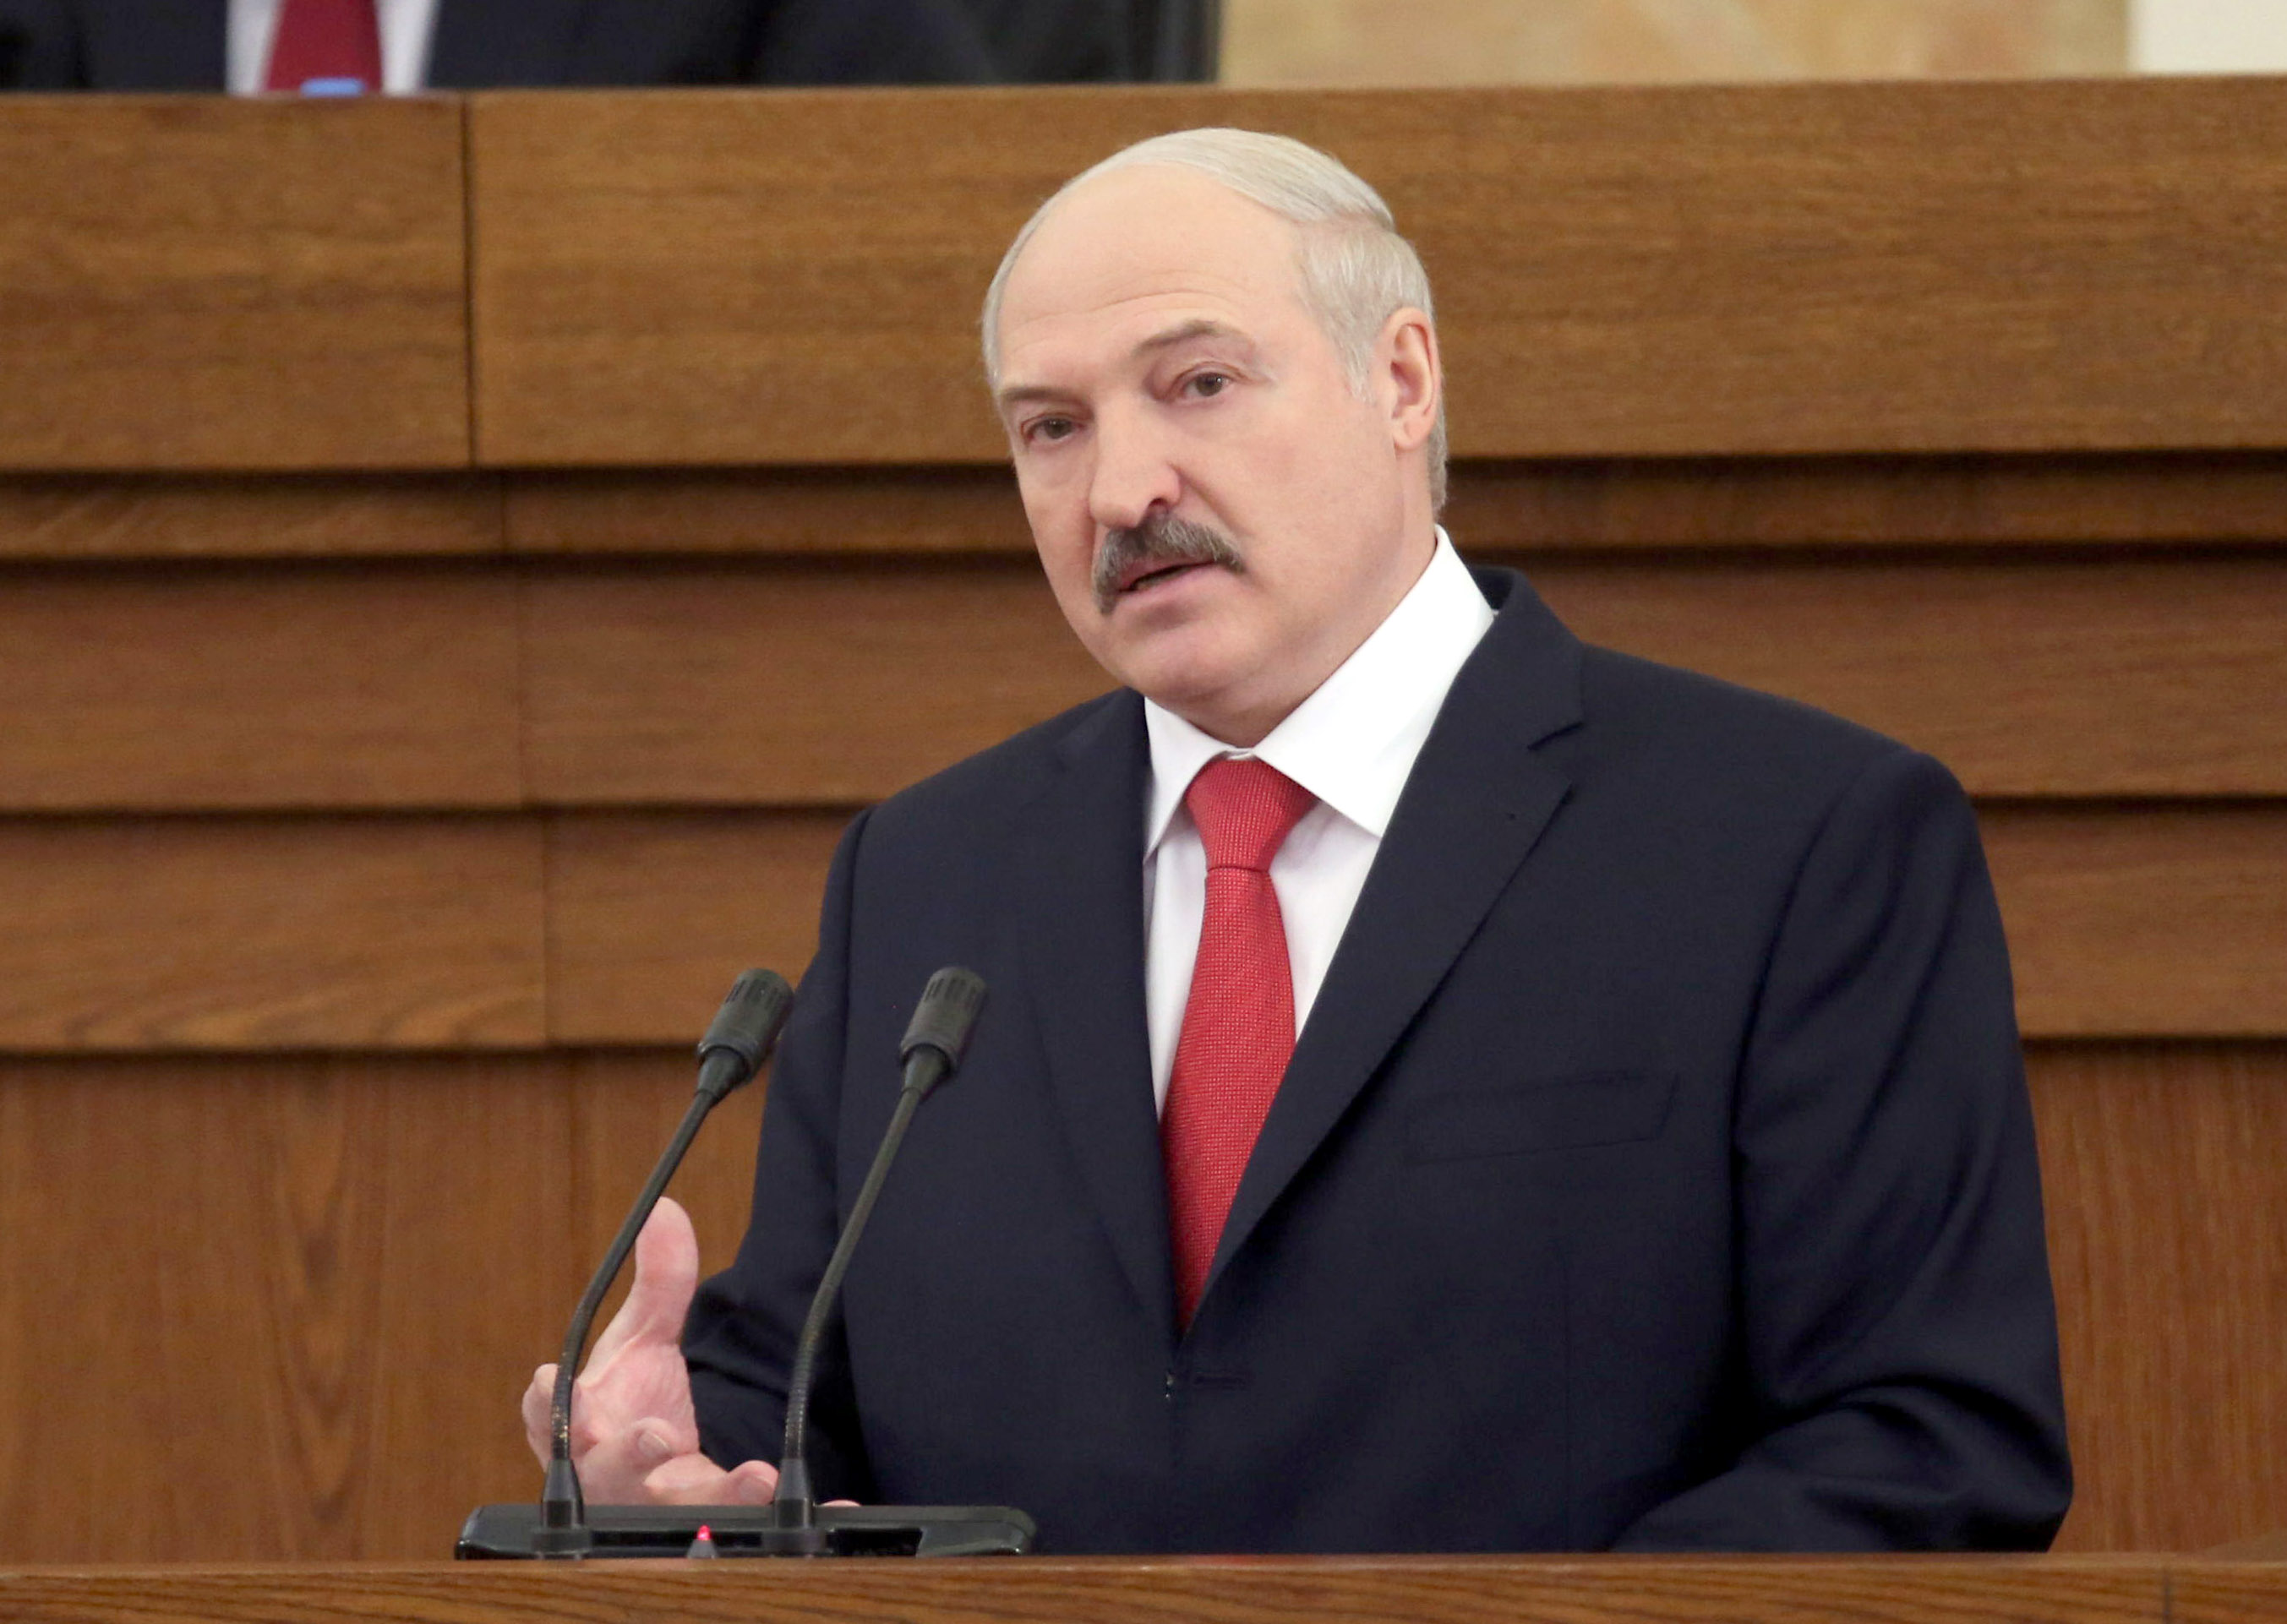   Tổng thống Belarus, ông Alexander Lukashenko nhiễm COVID-19 mà không có triệu chứng  